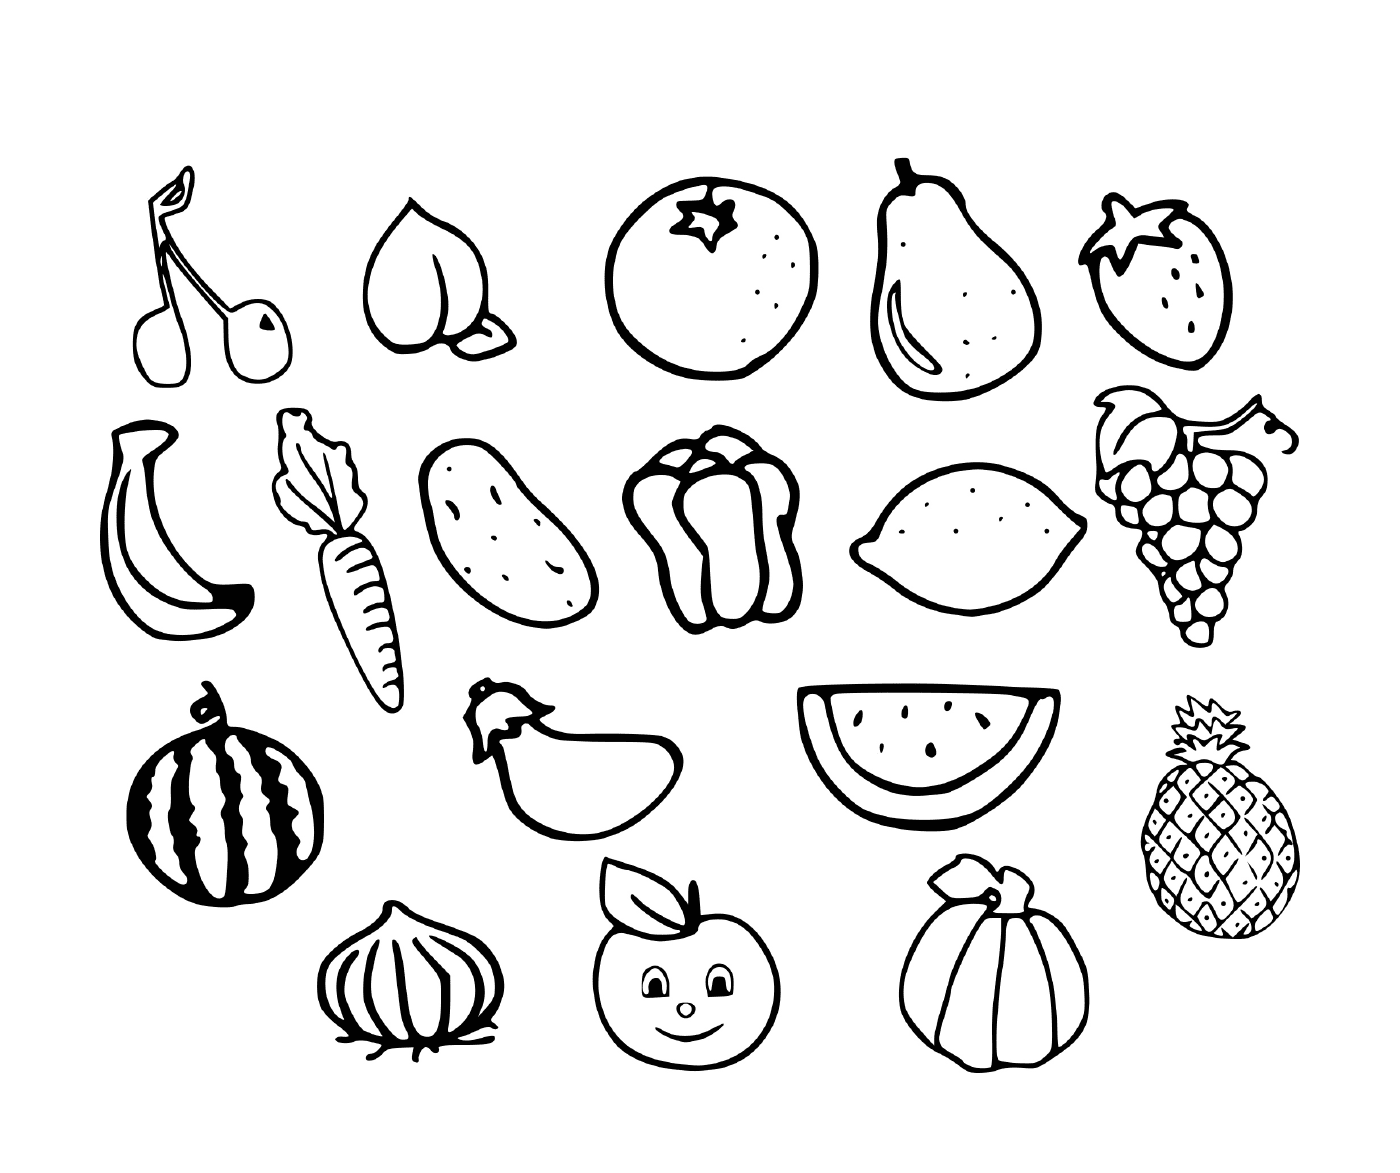  Obst und Gemüse 